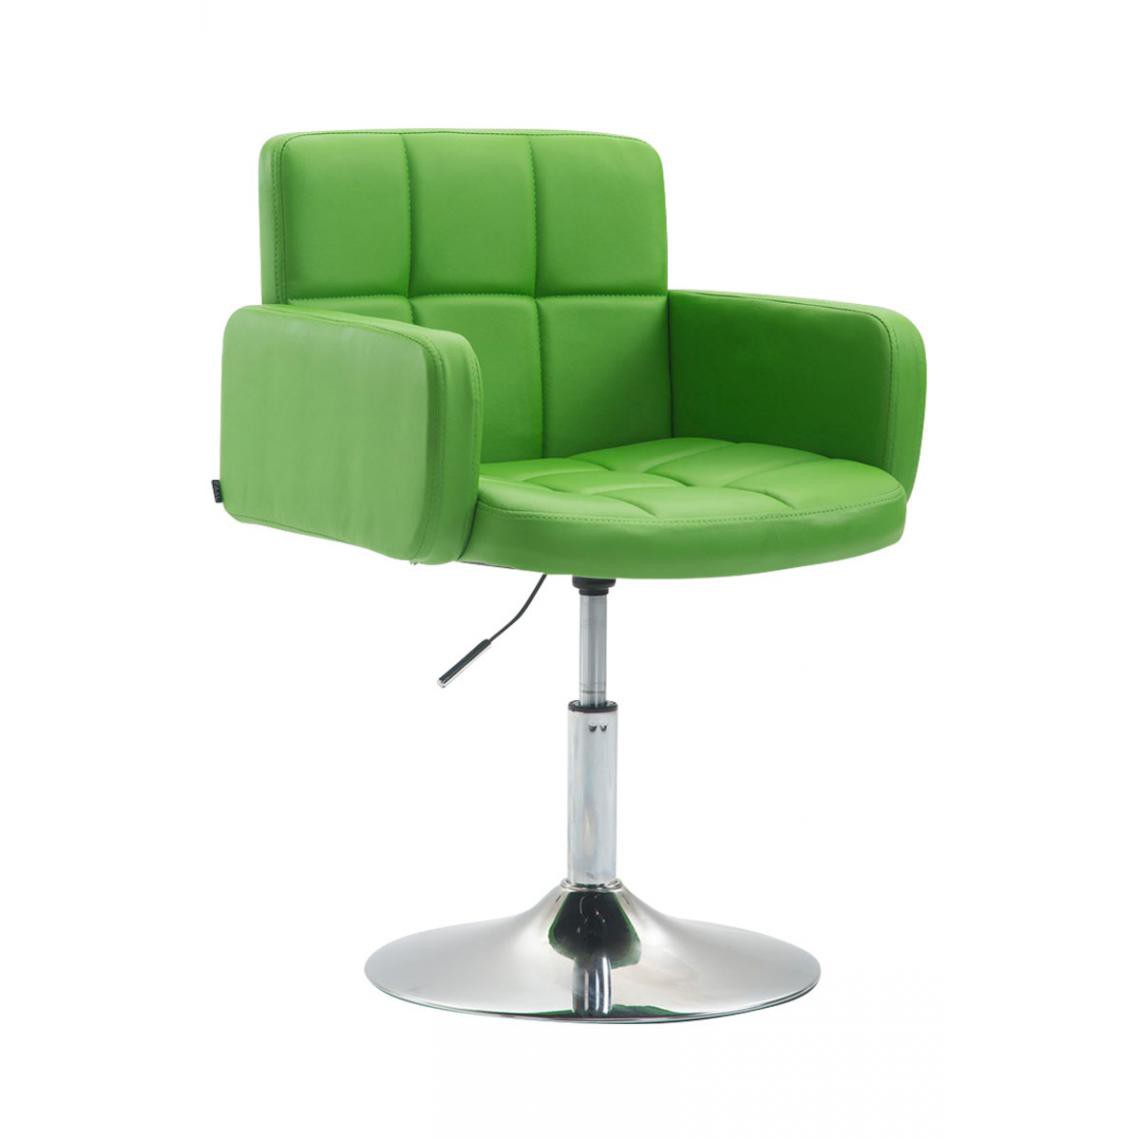 Icaverne - sublime Chaise longue ligne Nouakchott Angeles en cuir synthétique couleur vert - Transats, chaises longues